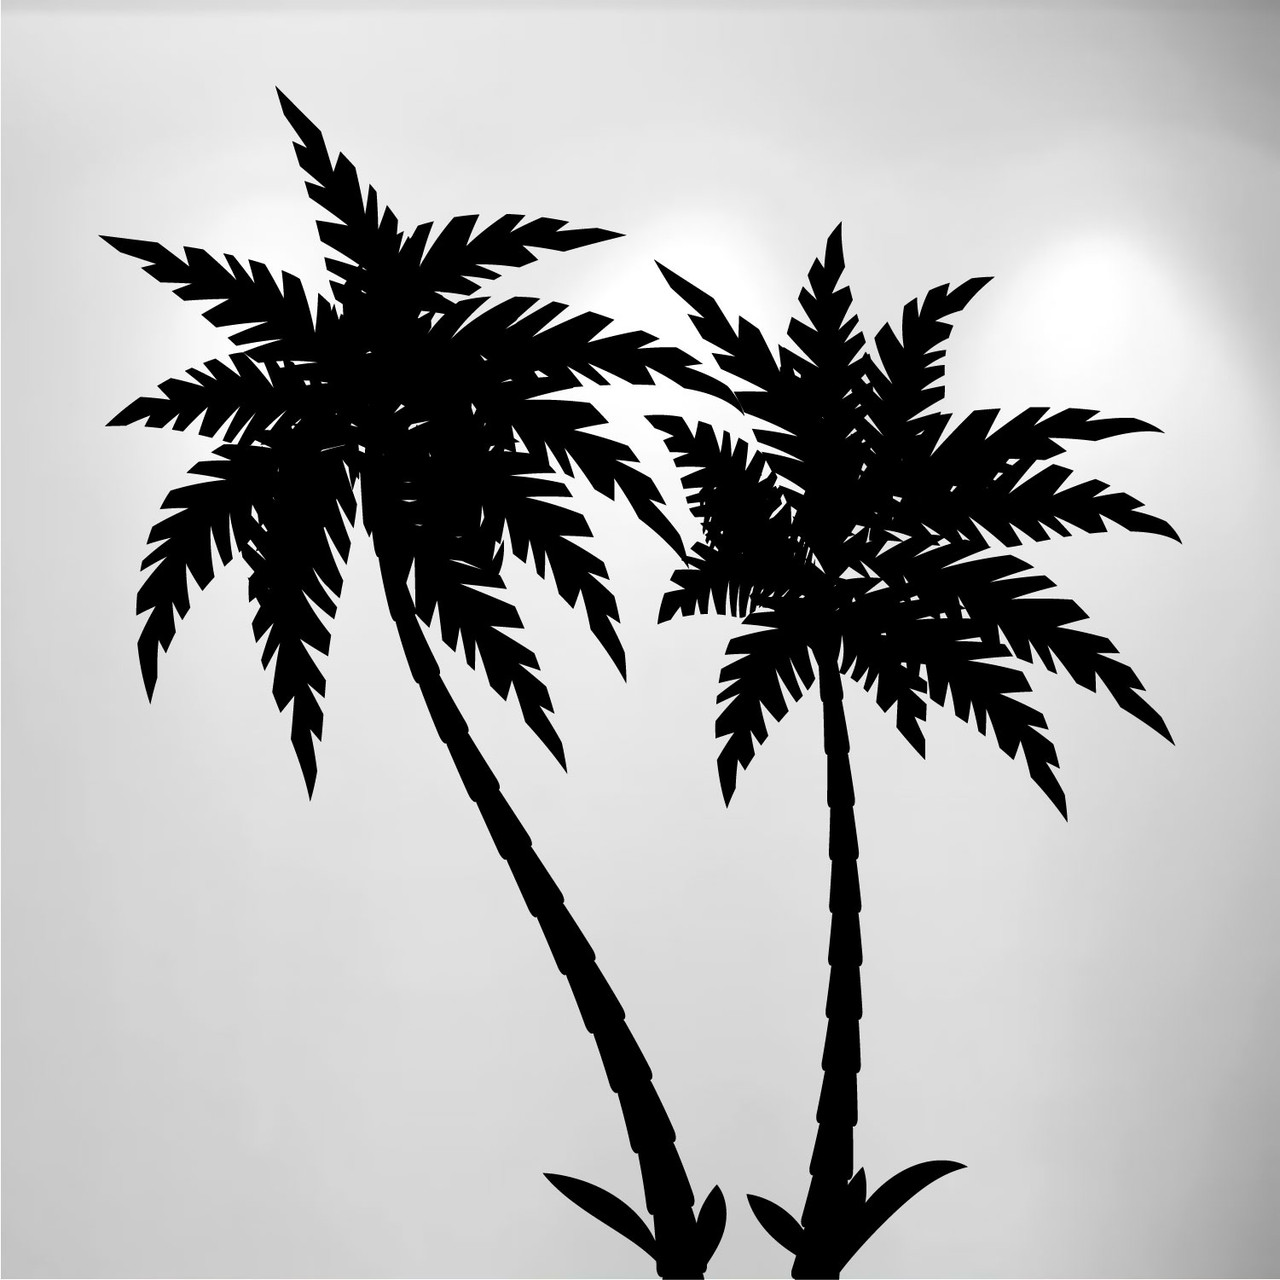 2 palm tree silhouette